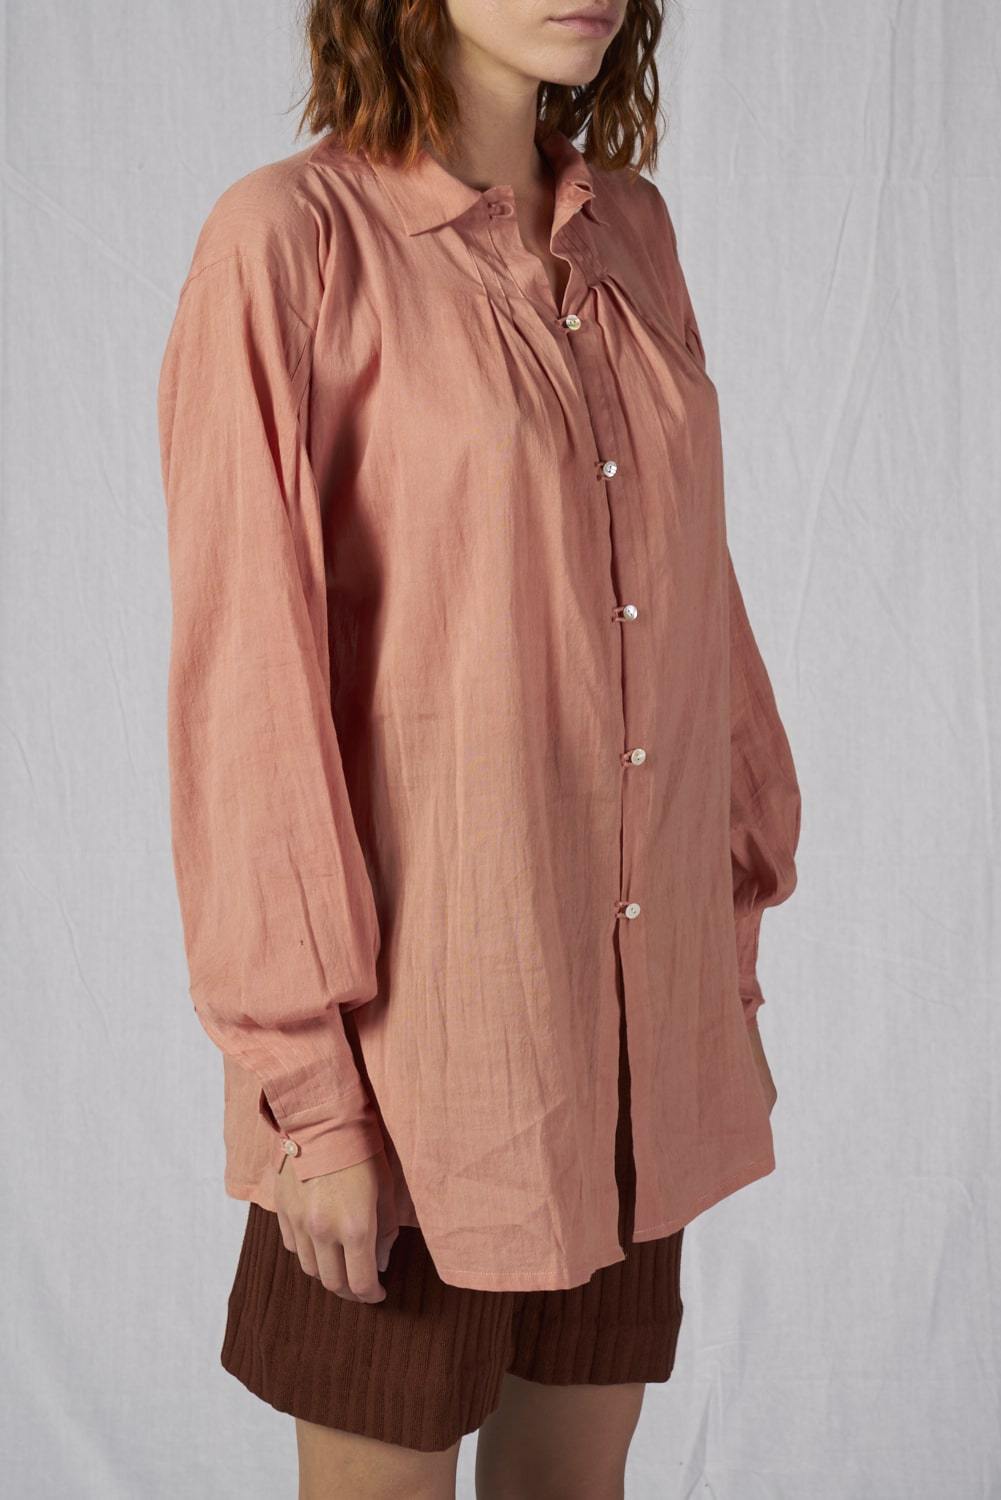 Topaz Shirt - Cora Bellotto - The Clothing LoungeCora Bellotto